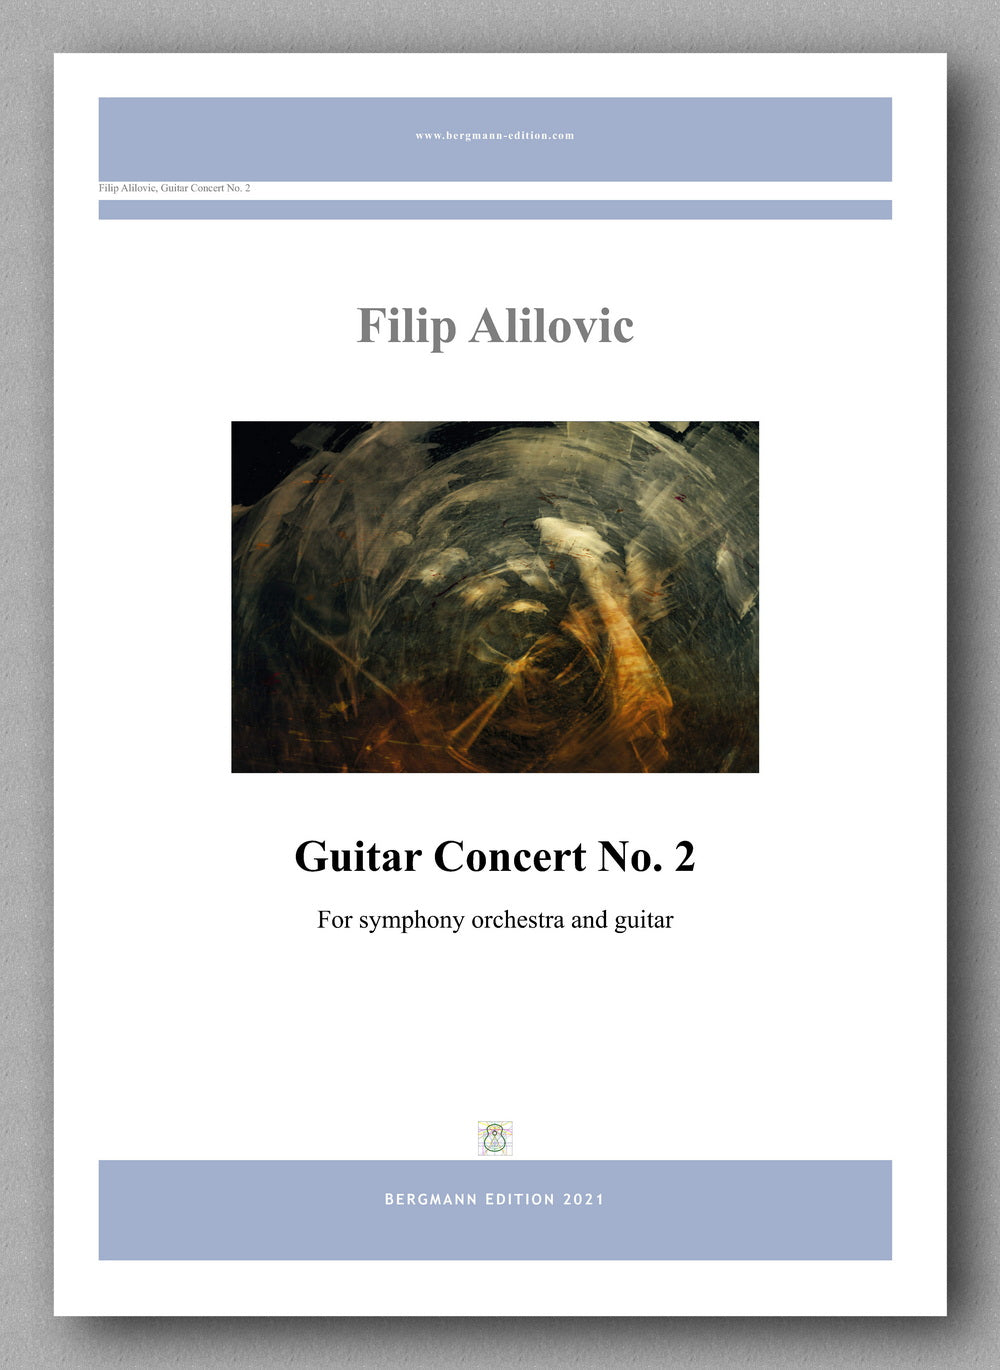 Filip Alilovic, Guitar Concert No. 2 - preview of the score